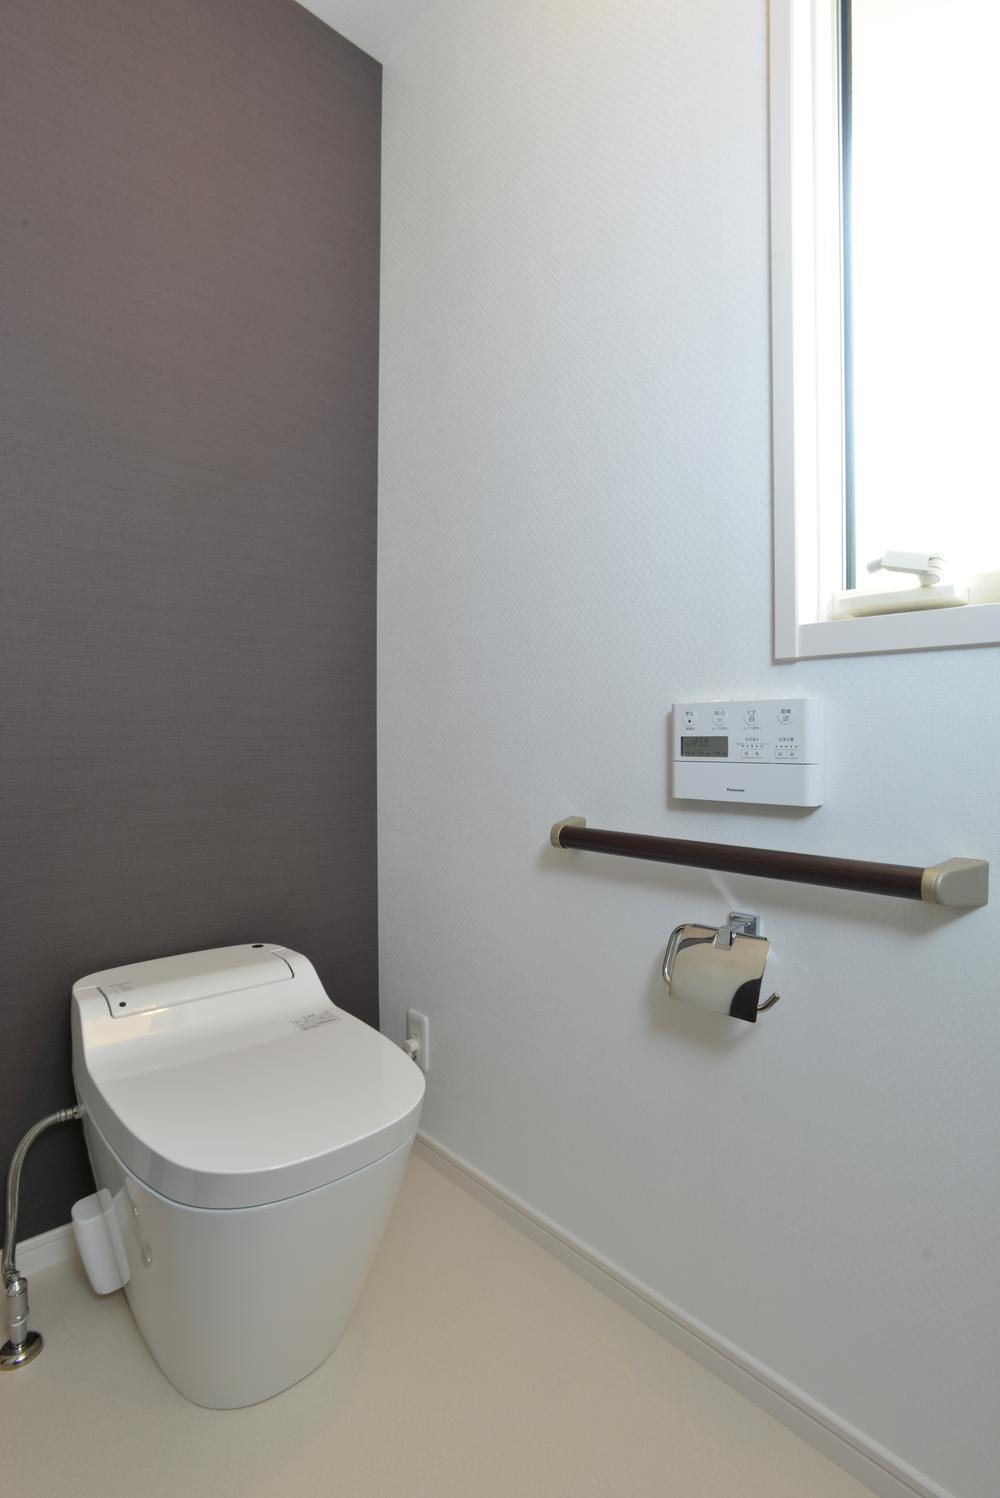 Toilet. Indoor (July 2013) captured the first floor La Uno